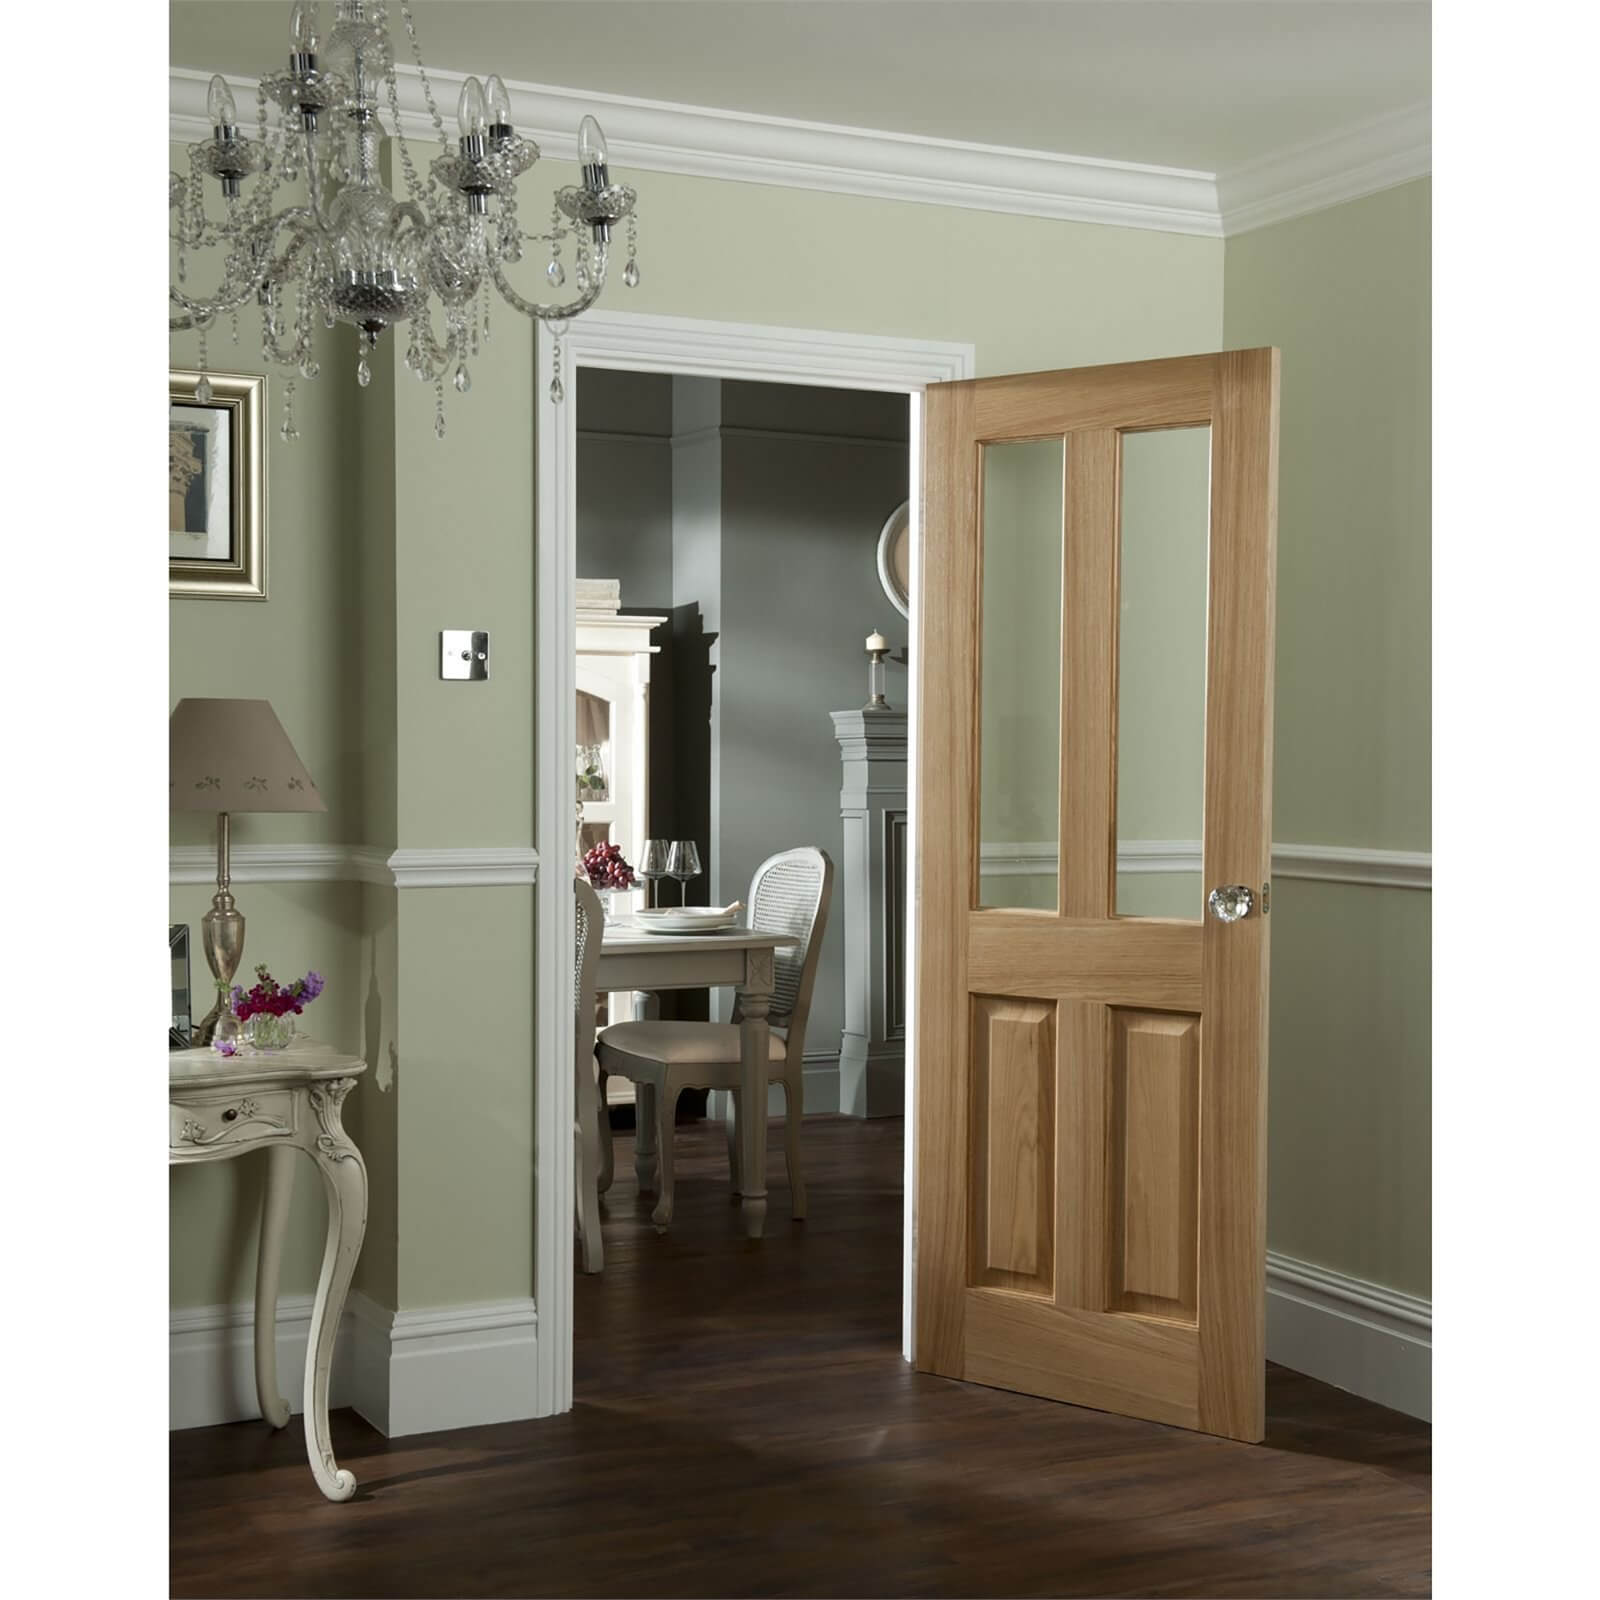 2 Light Clear Glazed Oak Veneer Internal Door 686 x 1981mm